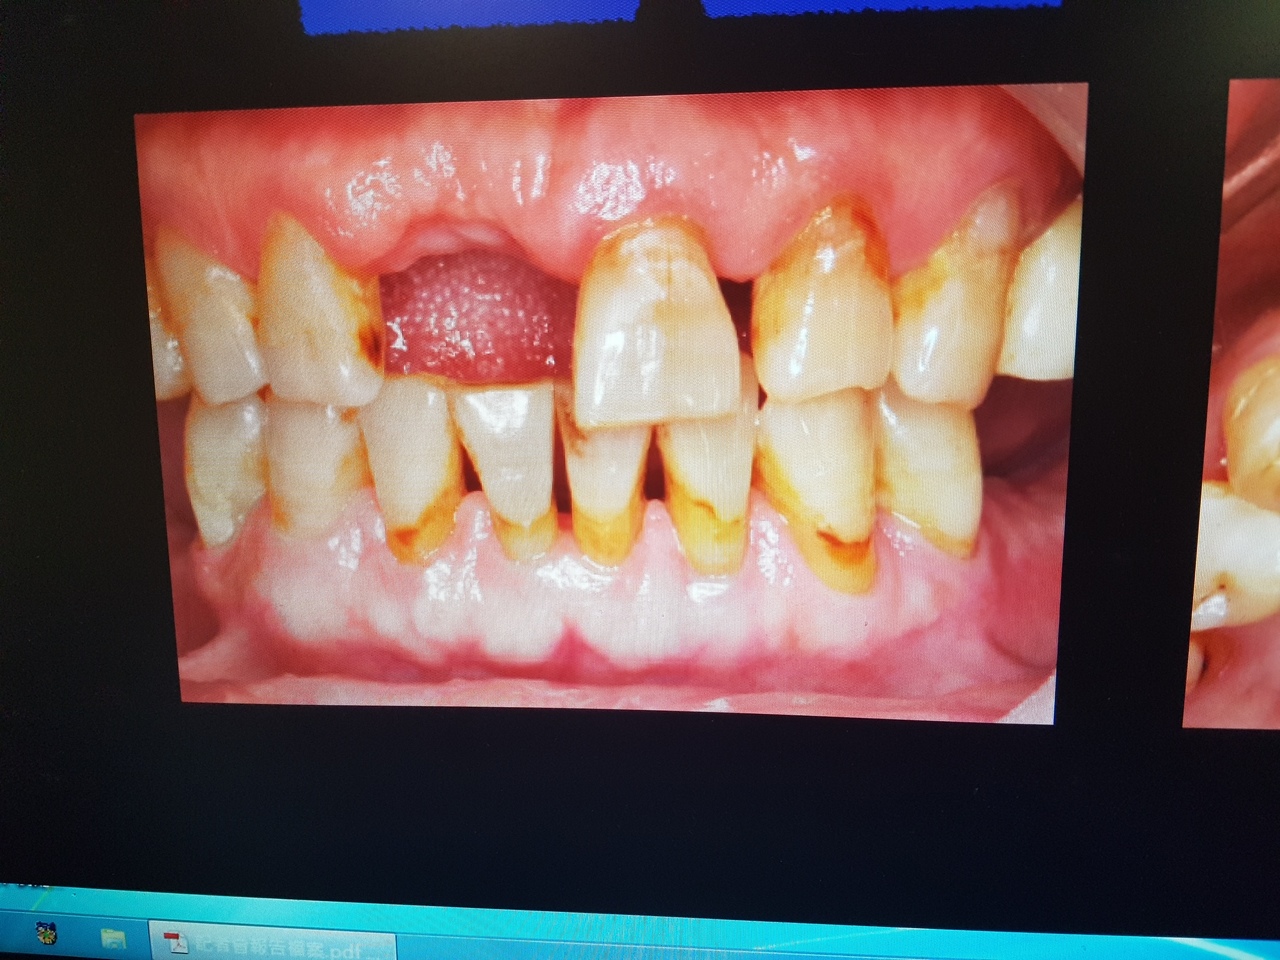 牙齒拔掉就ok了嗎 牙醫師建議先進行齒槽脊保存術 牙科 科別 元氣網